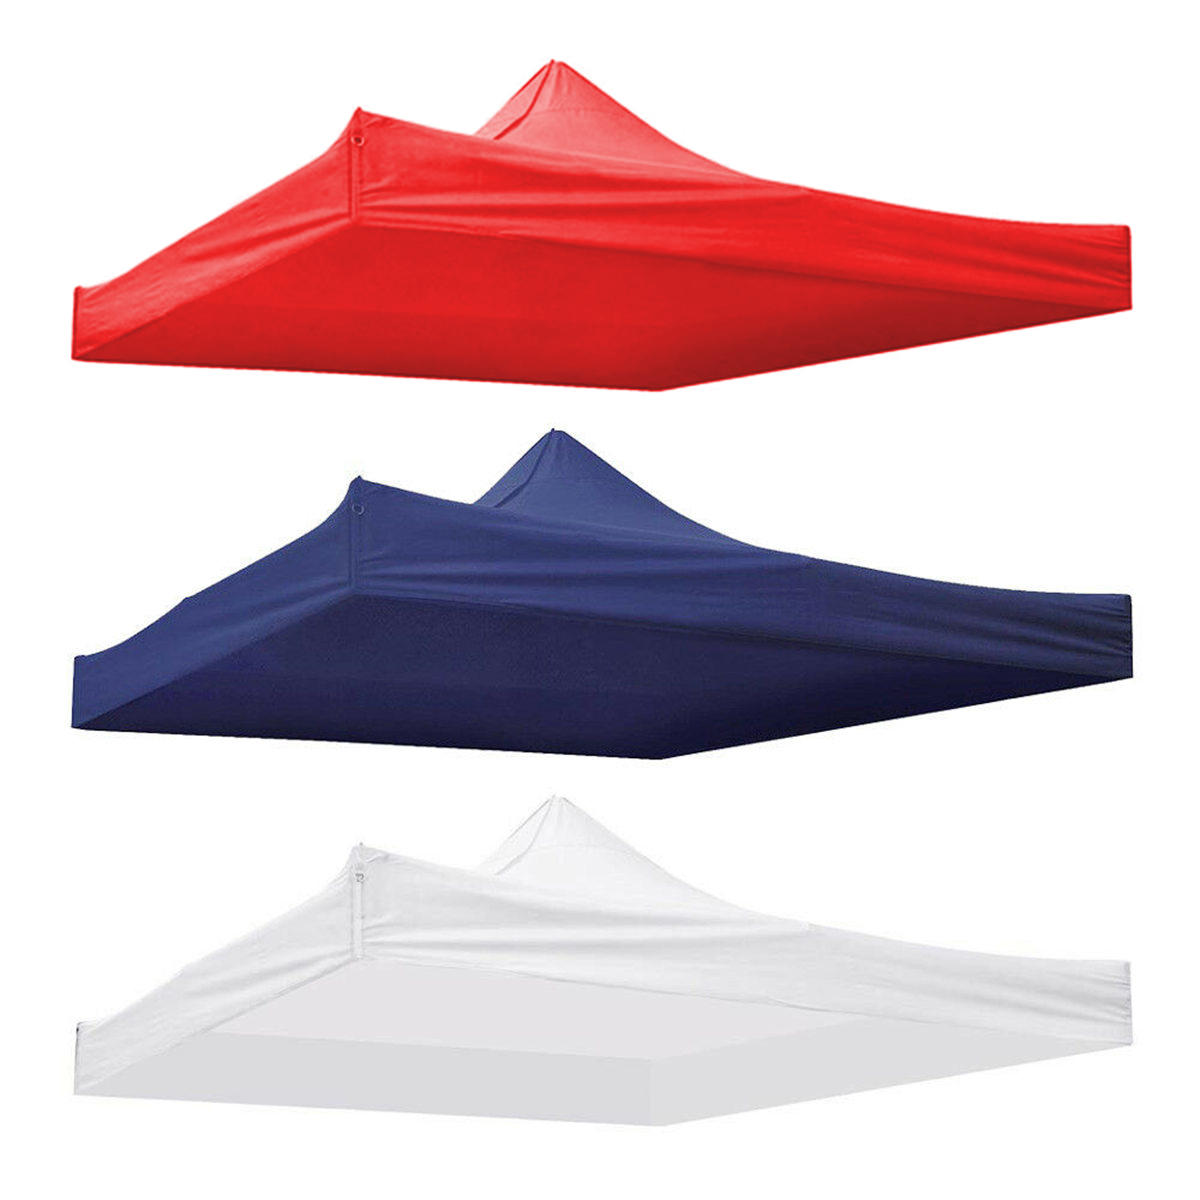 o: Copertura superiore impermeabile di ricambio per tenda patio gazebo da 9,5x9,5 piedi in tessuto 420D con protezione UV.